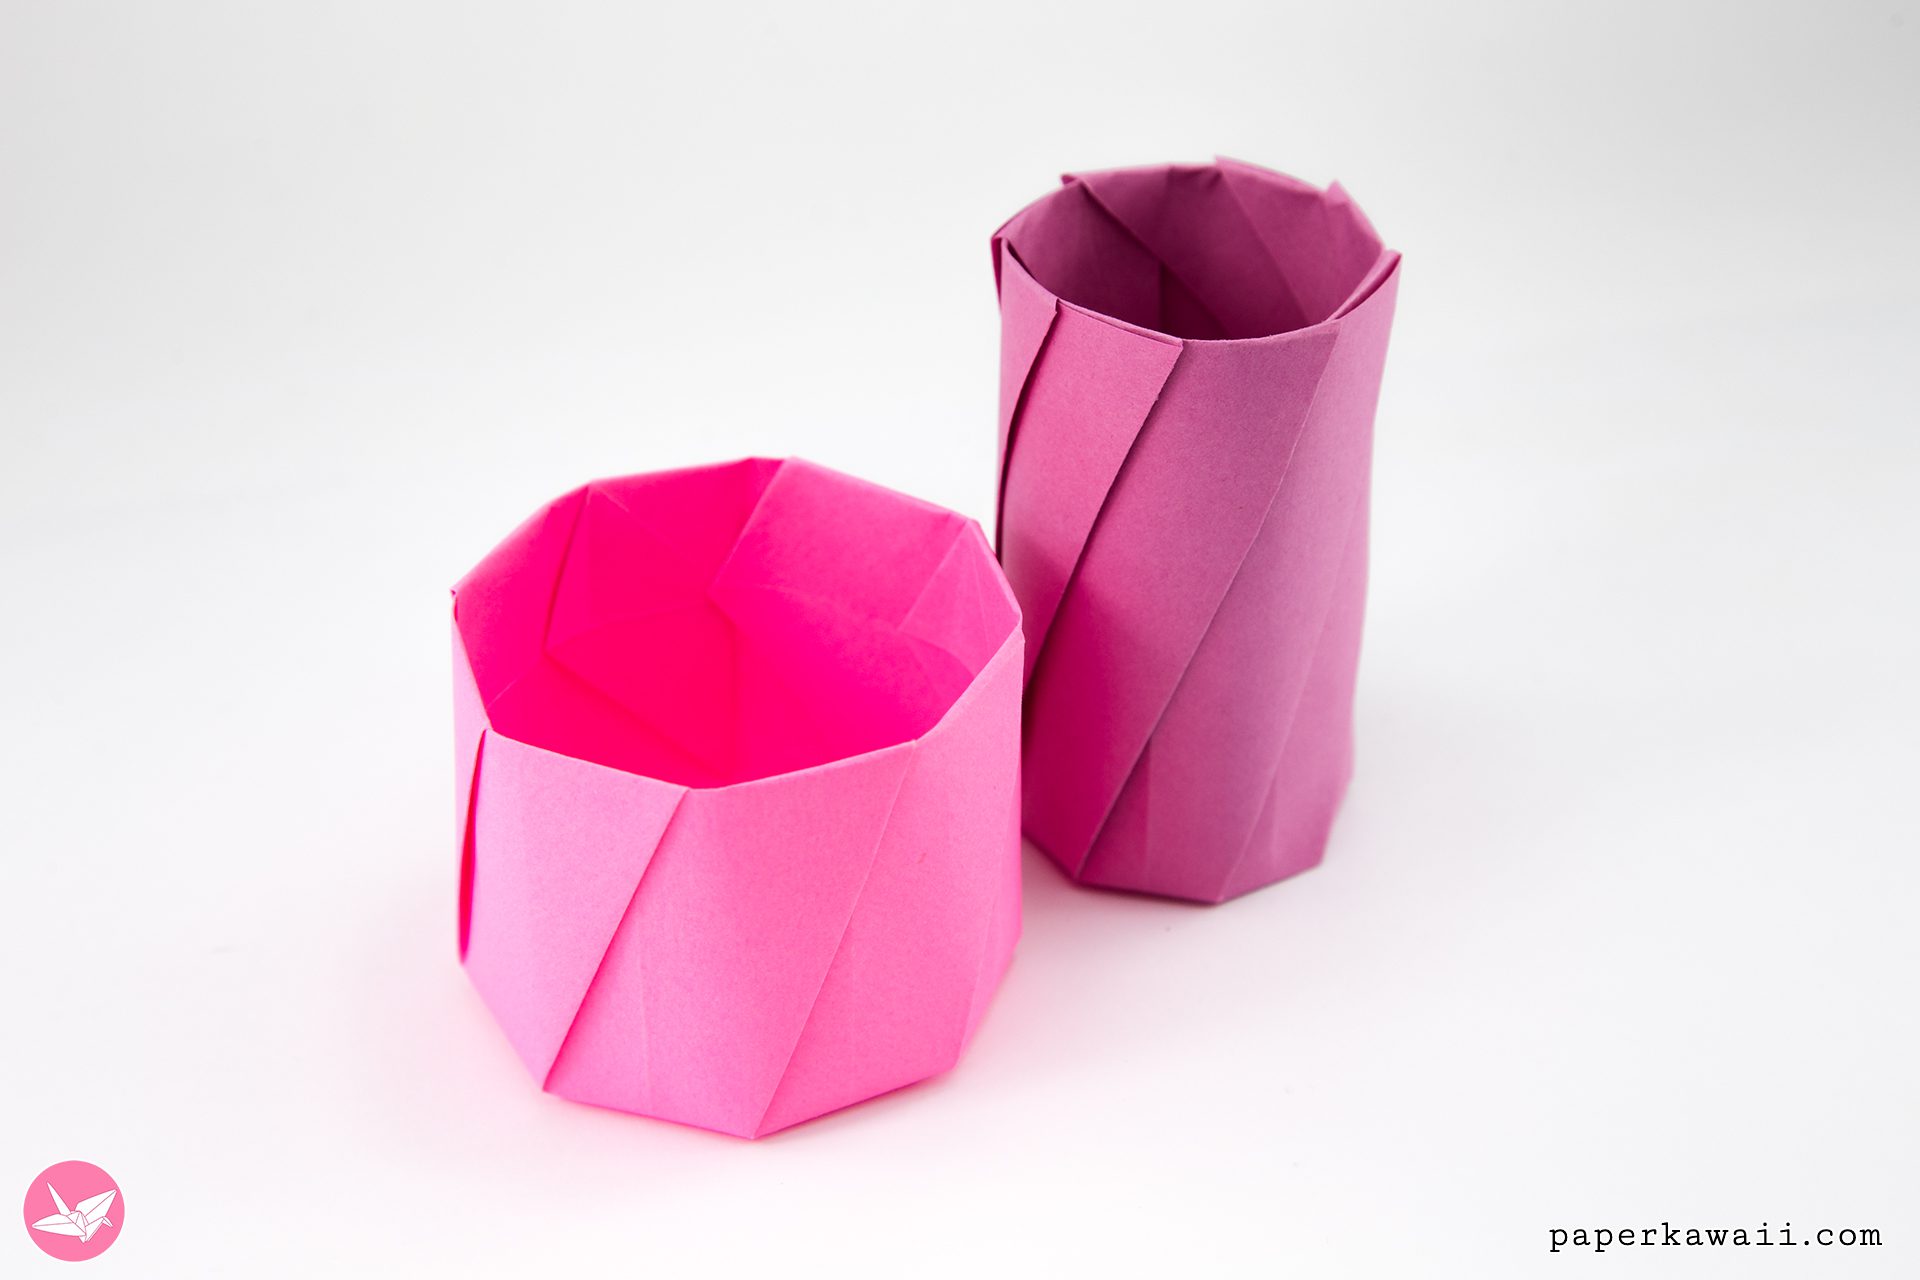 Origami Bowls - Paper Kawaii